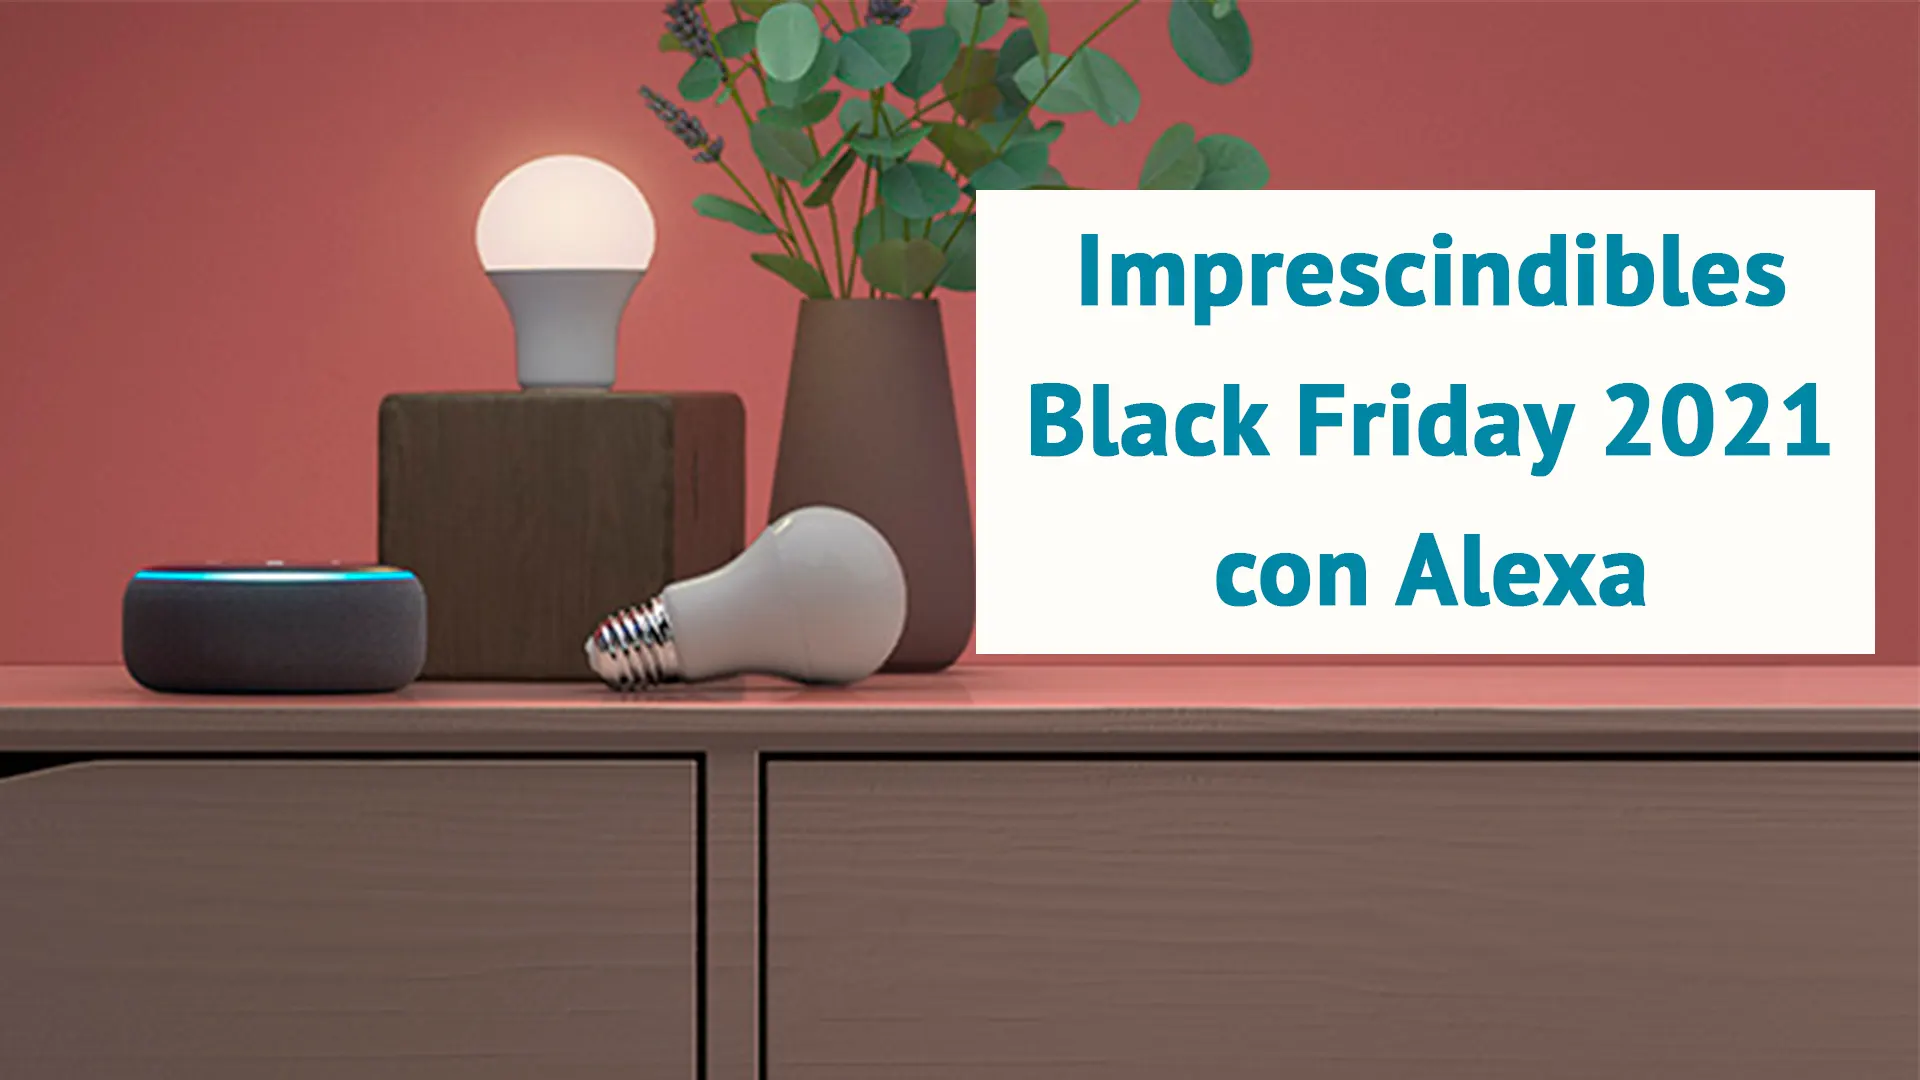 Imprescindibles Black Friday 2021 para el Hogar Digital con Alexa